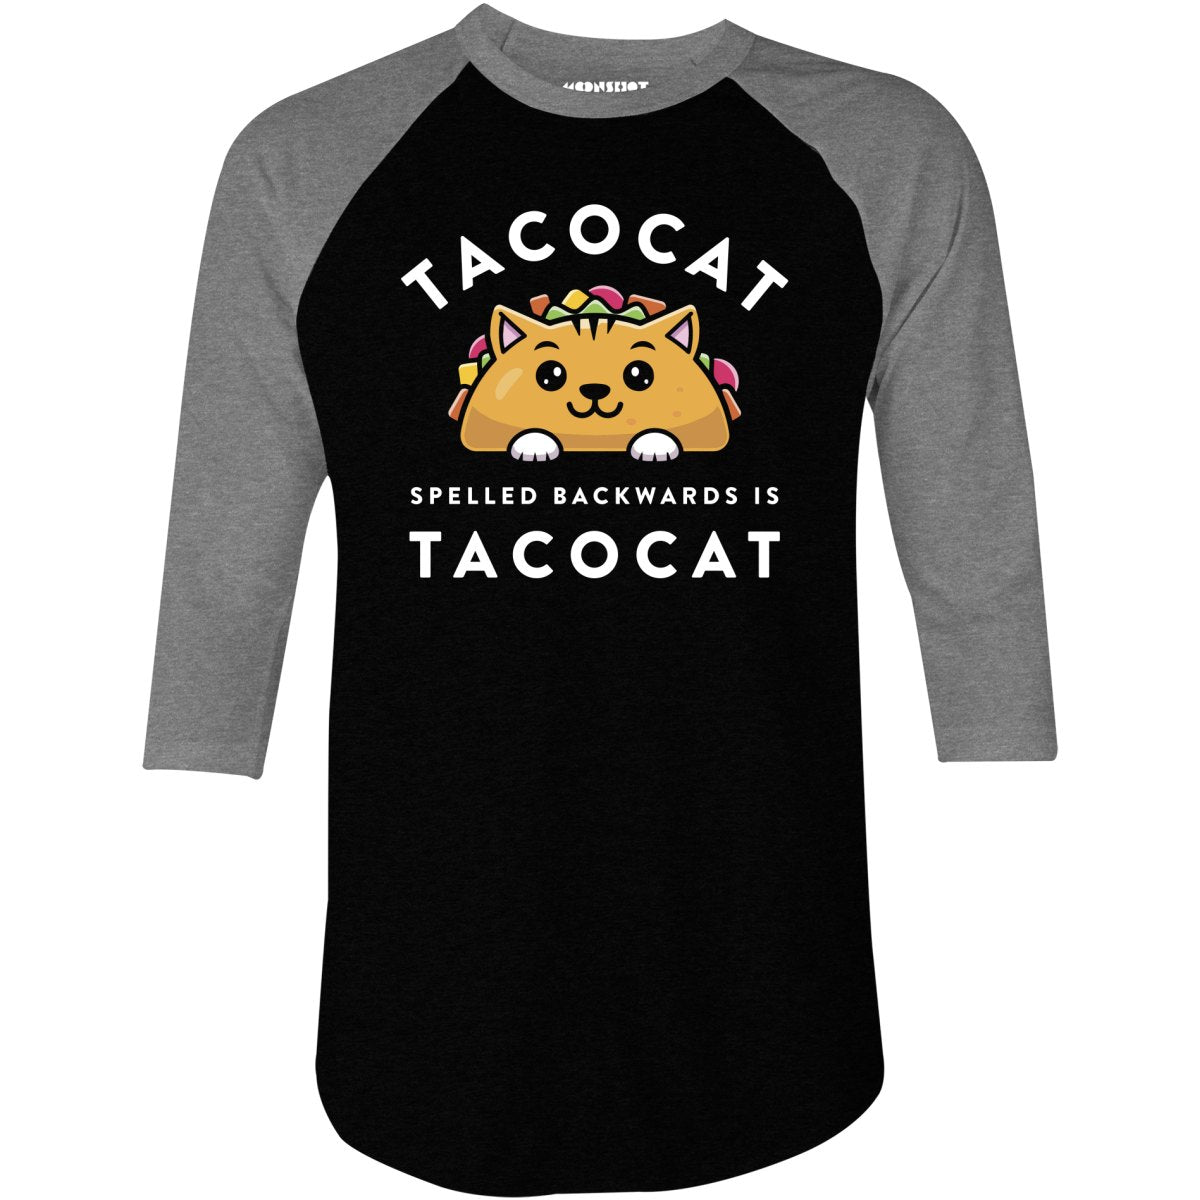 Tacocat Spelled Backwards - 3/4 Sleeve Raglan T-Shirt